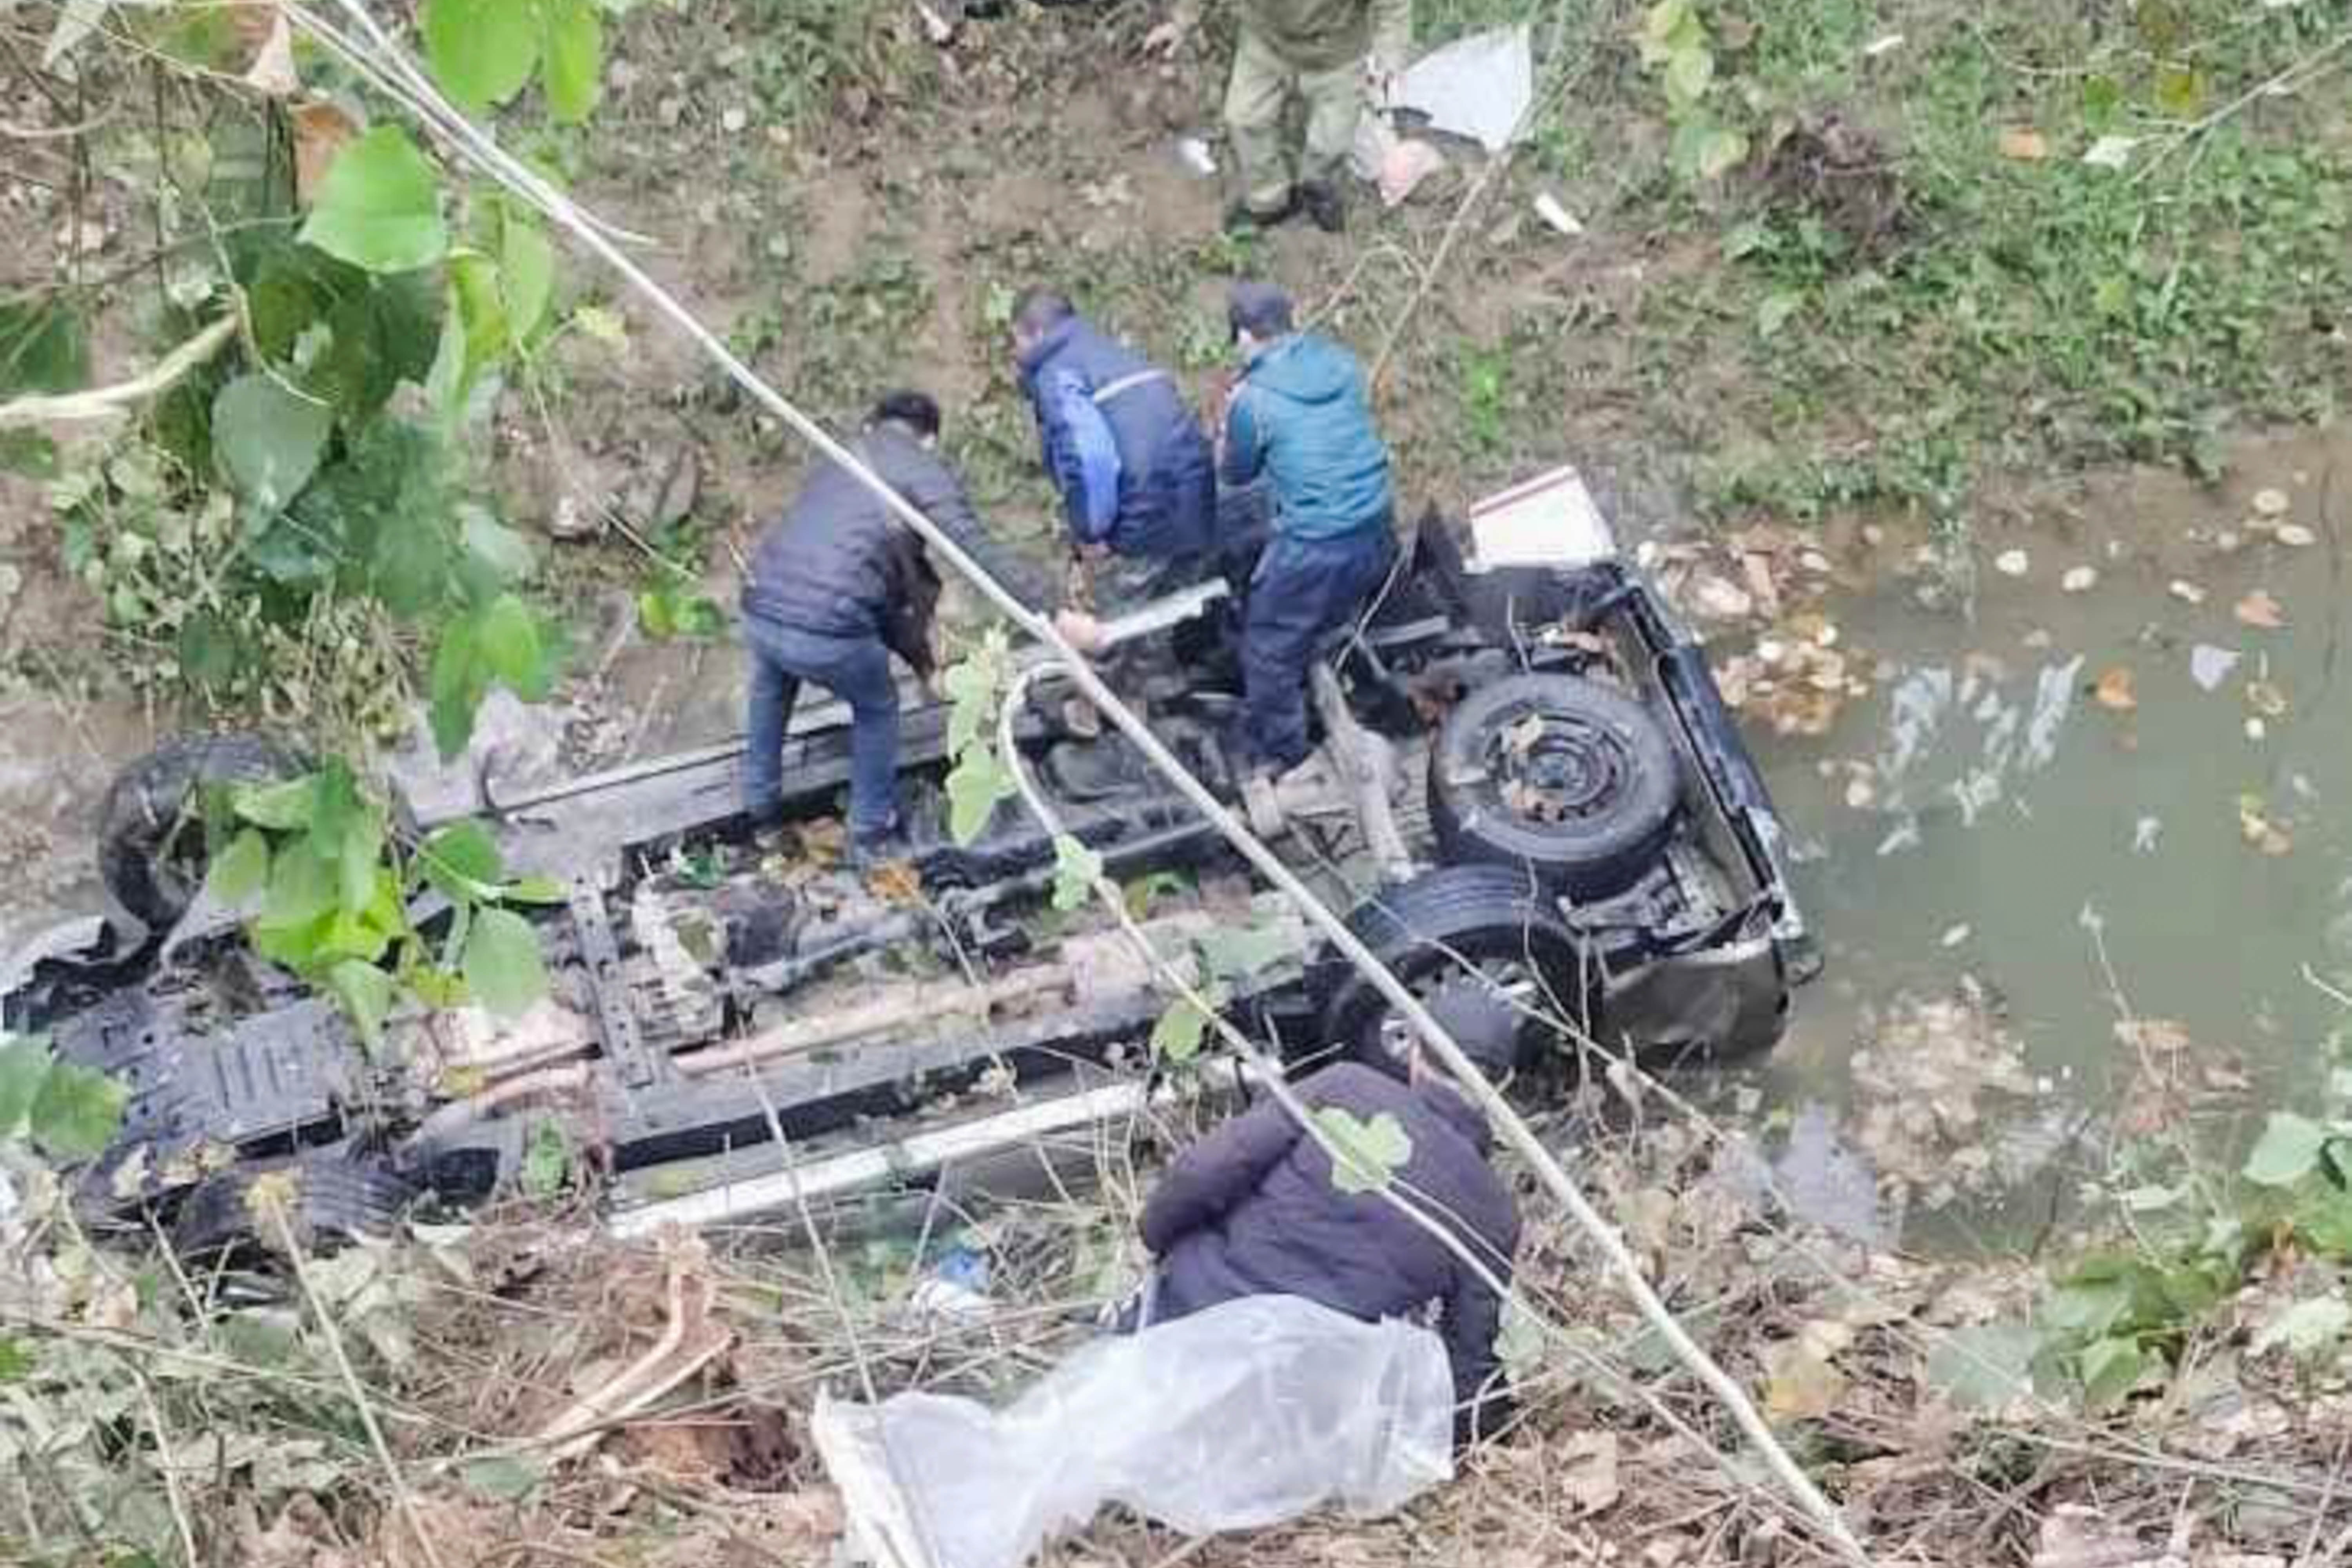 Ô tô lao xuống vực ở Lạng Sơn, 2 người tử vong - 1